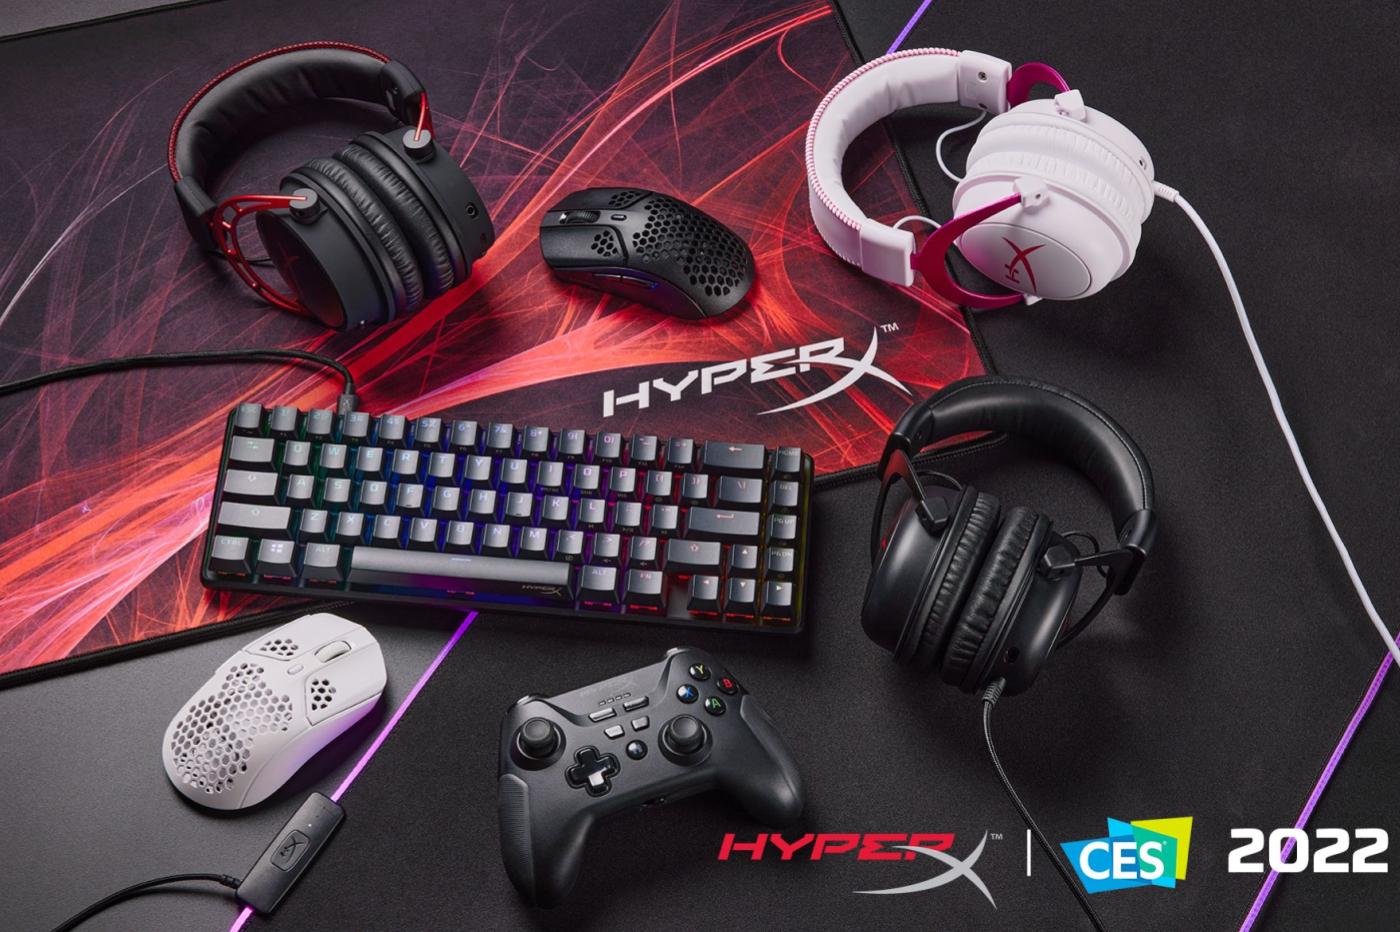 accessoires gamings hyperx CES 2022